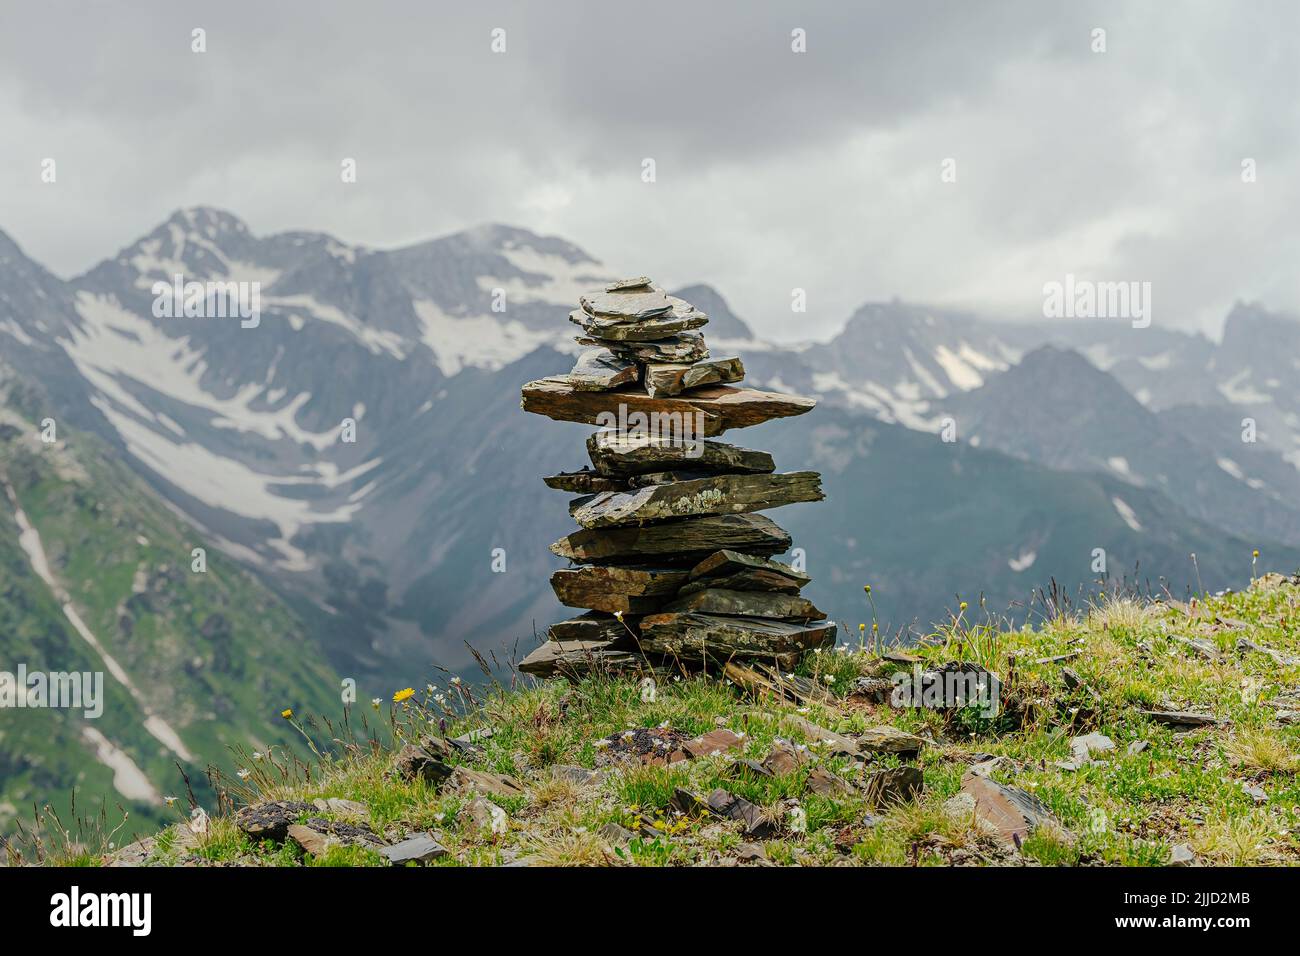 piedras piramidales en los picos nevados de las montañas Foto de stock